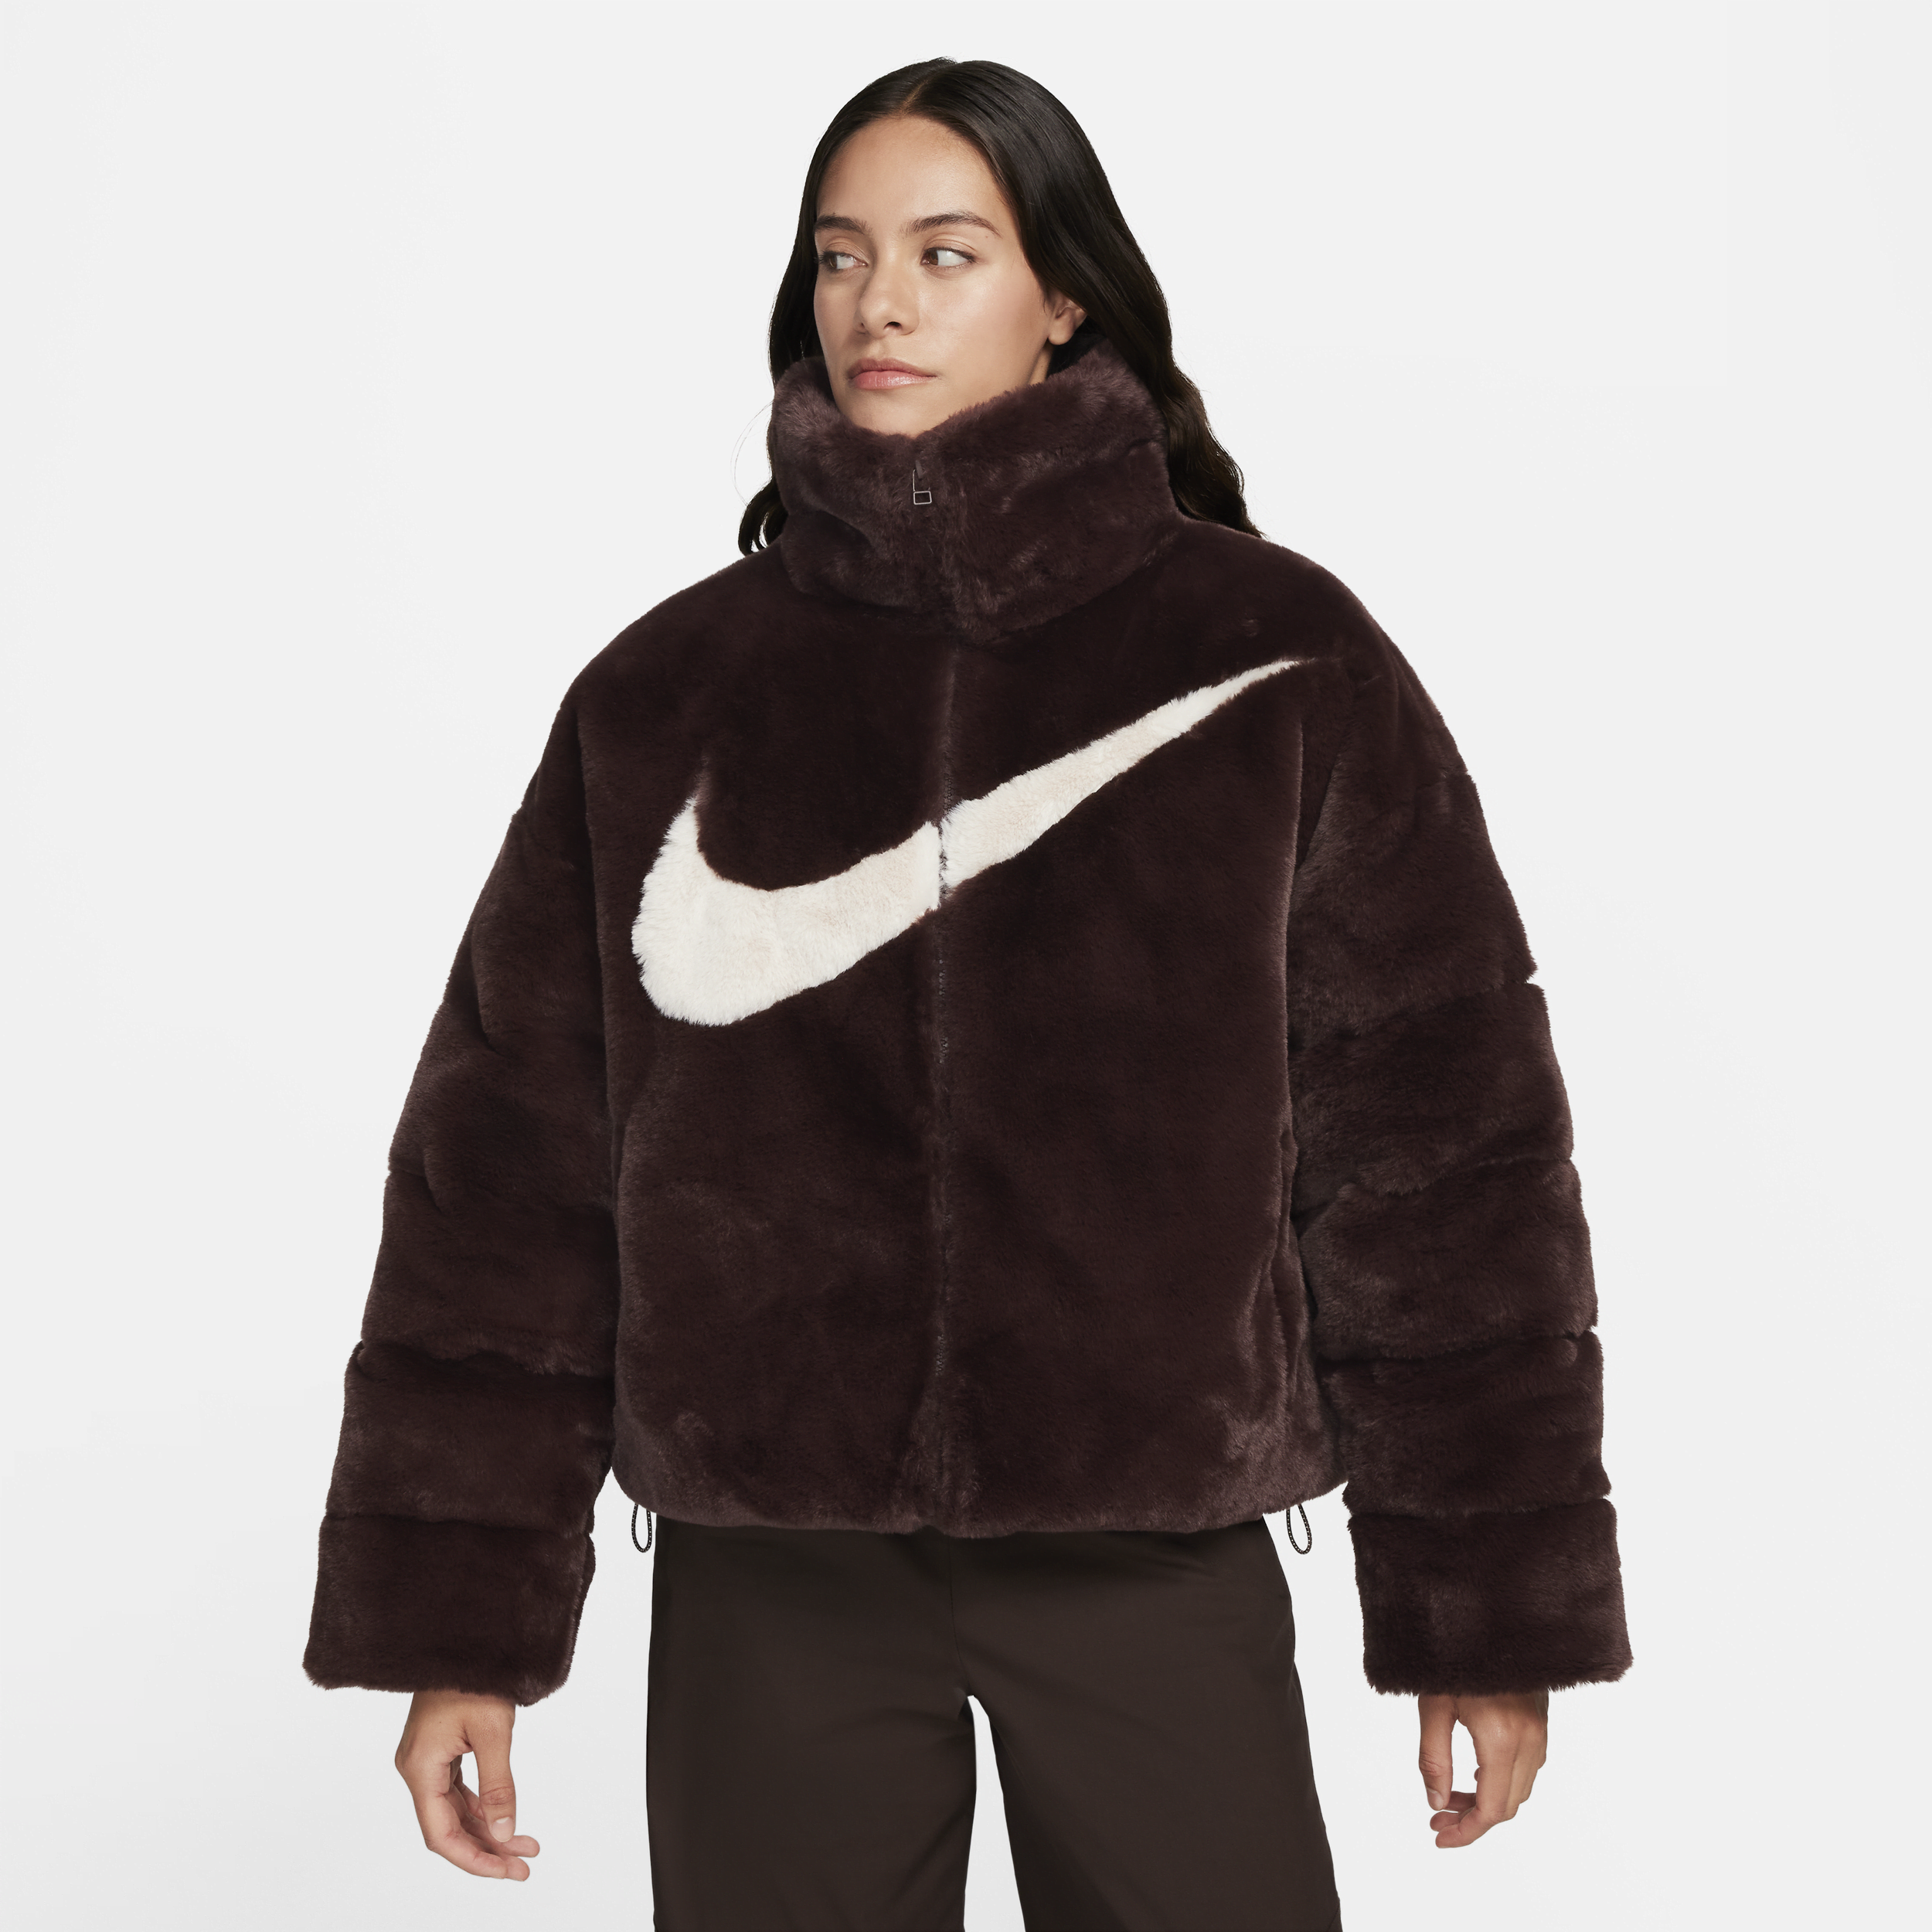 Overdimensioneret Nike Sportswear Essential-dynejakke i imiteret pels til kvinder - brun